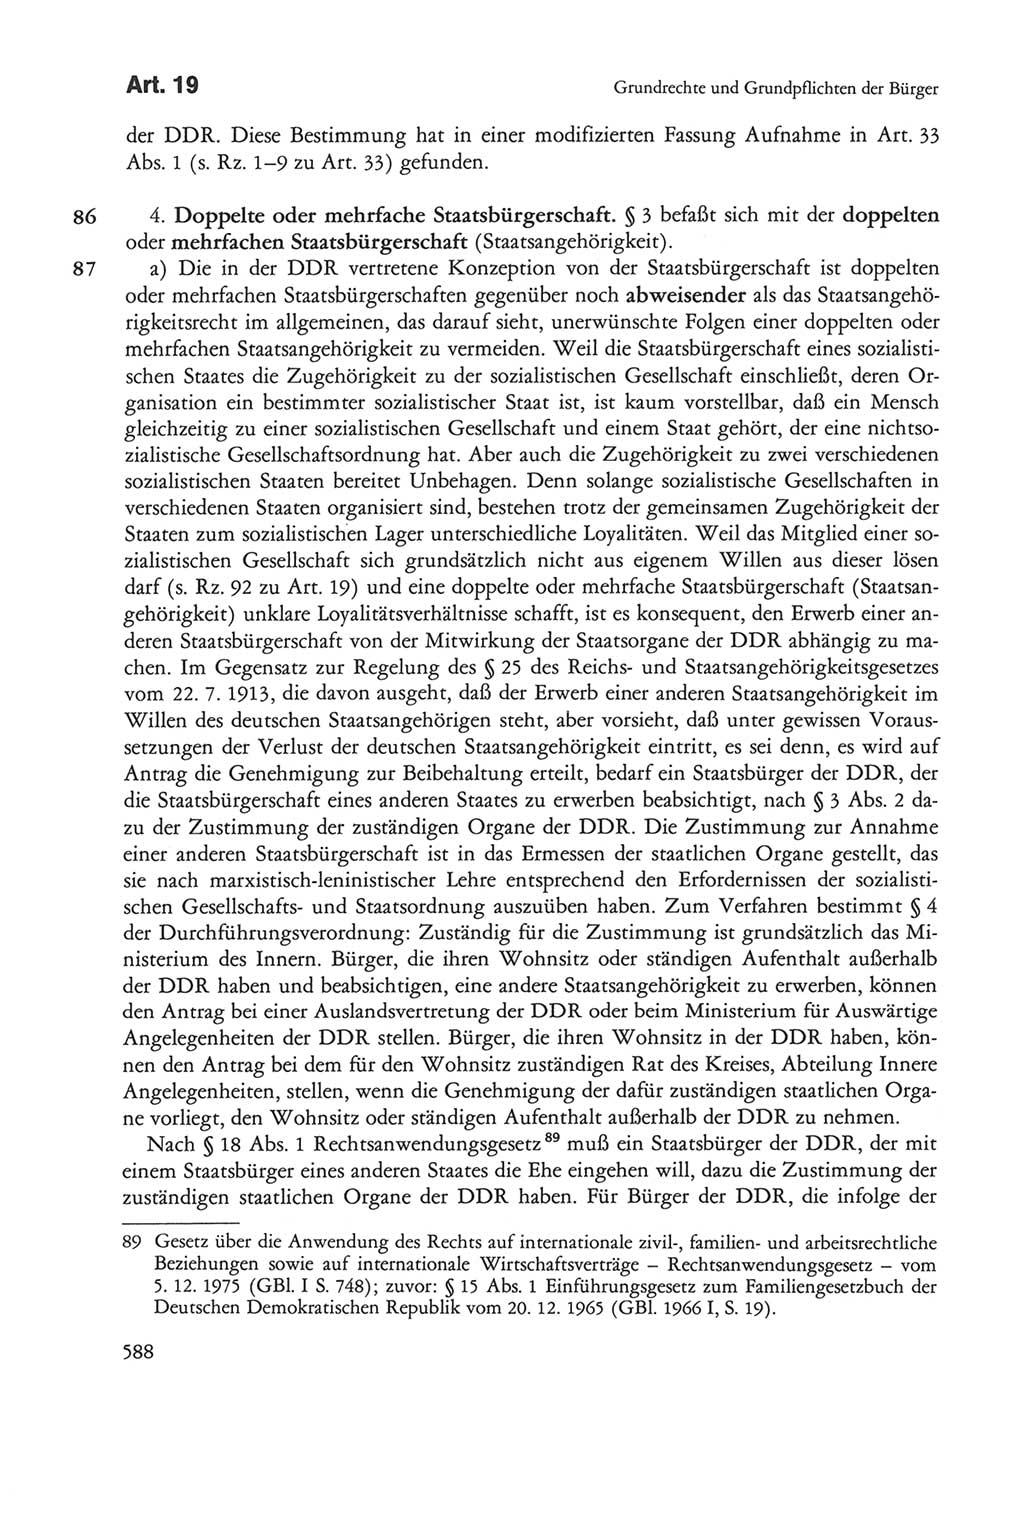 Die sozialistische Verfassung der Deutschen Demokratischen Republik (DDR), Kommentar 1982, Seite 588 (Soz. Verf. DDR Komm. 1982, S. 588)